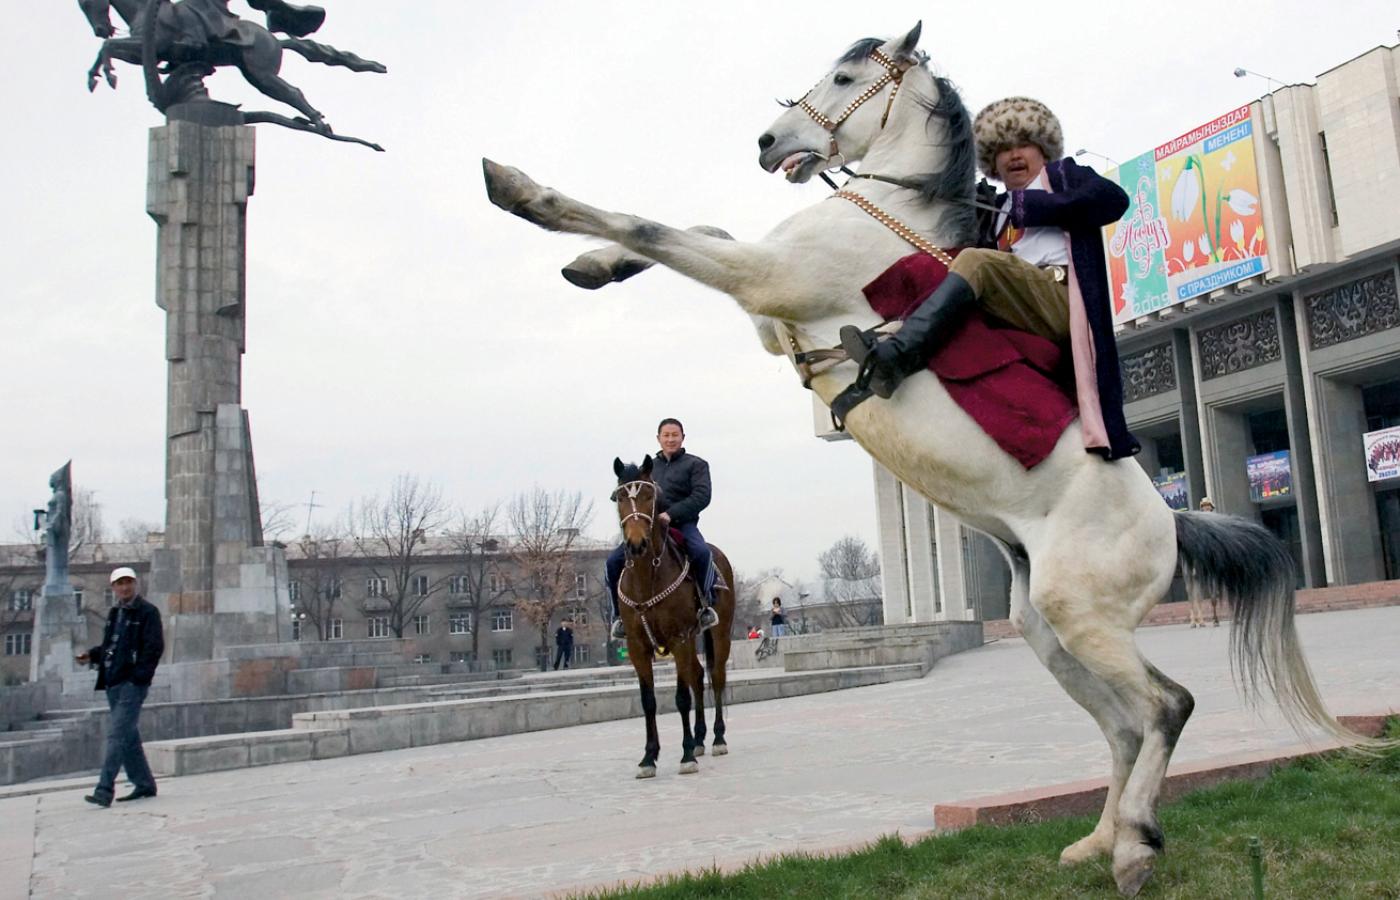 Popis jeździeckich umiejętności w pobliżu monumentu sławiącego Manasa, kirgiskiego bohatera narodowego.